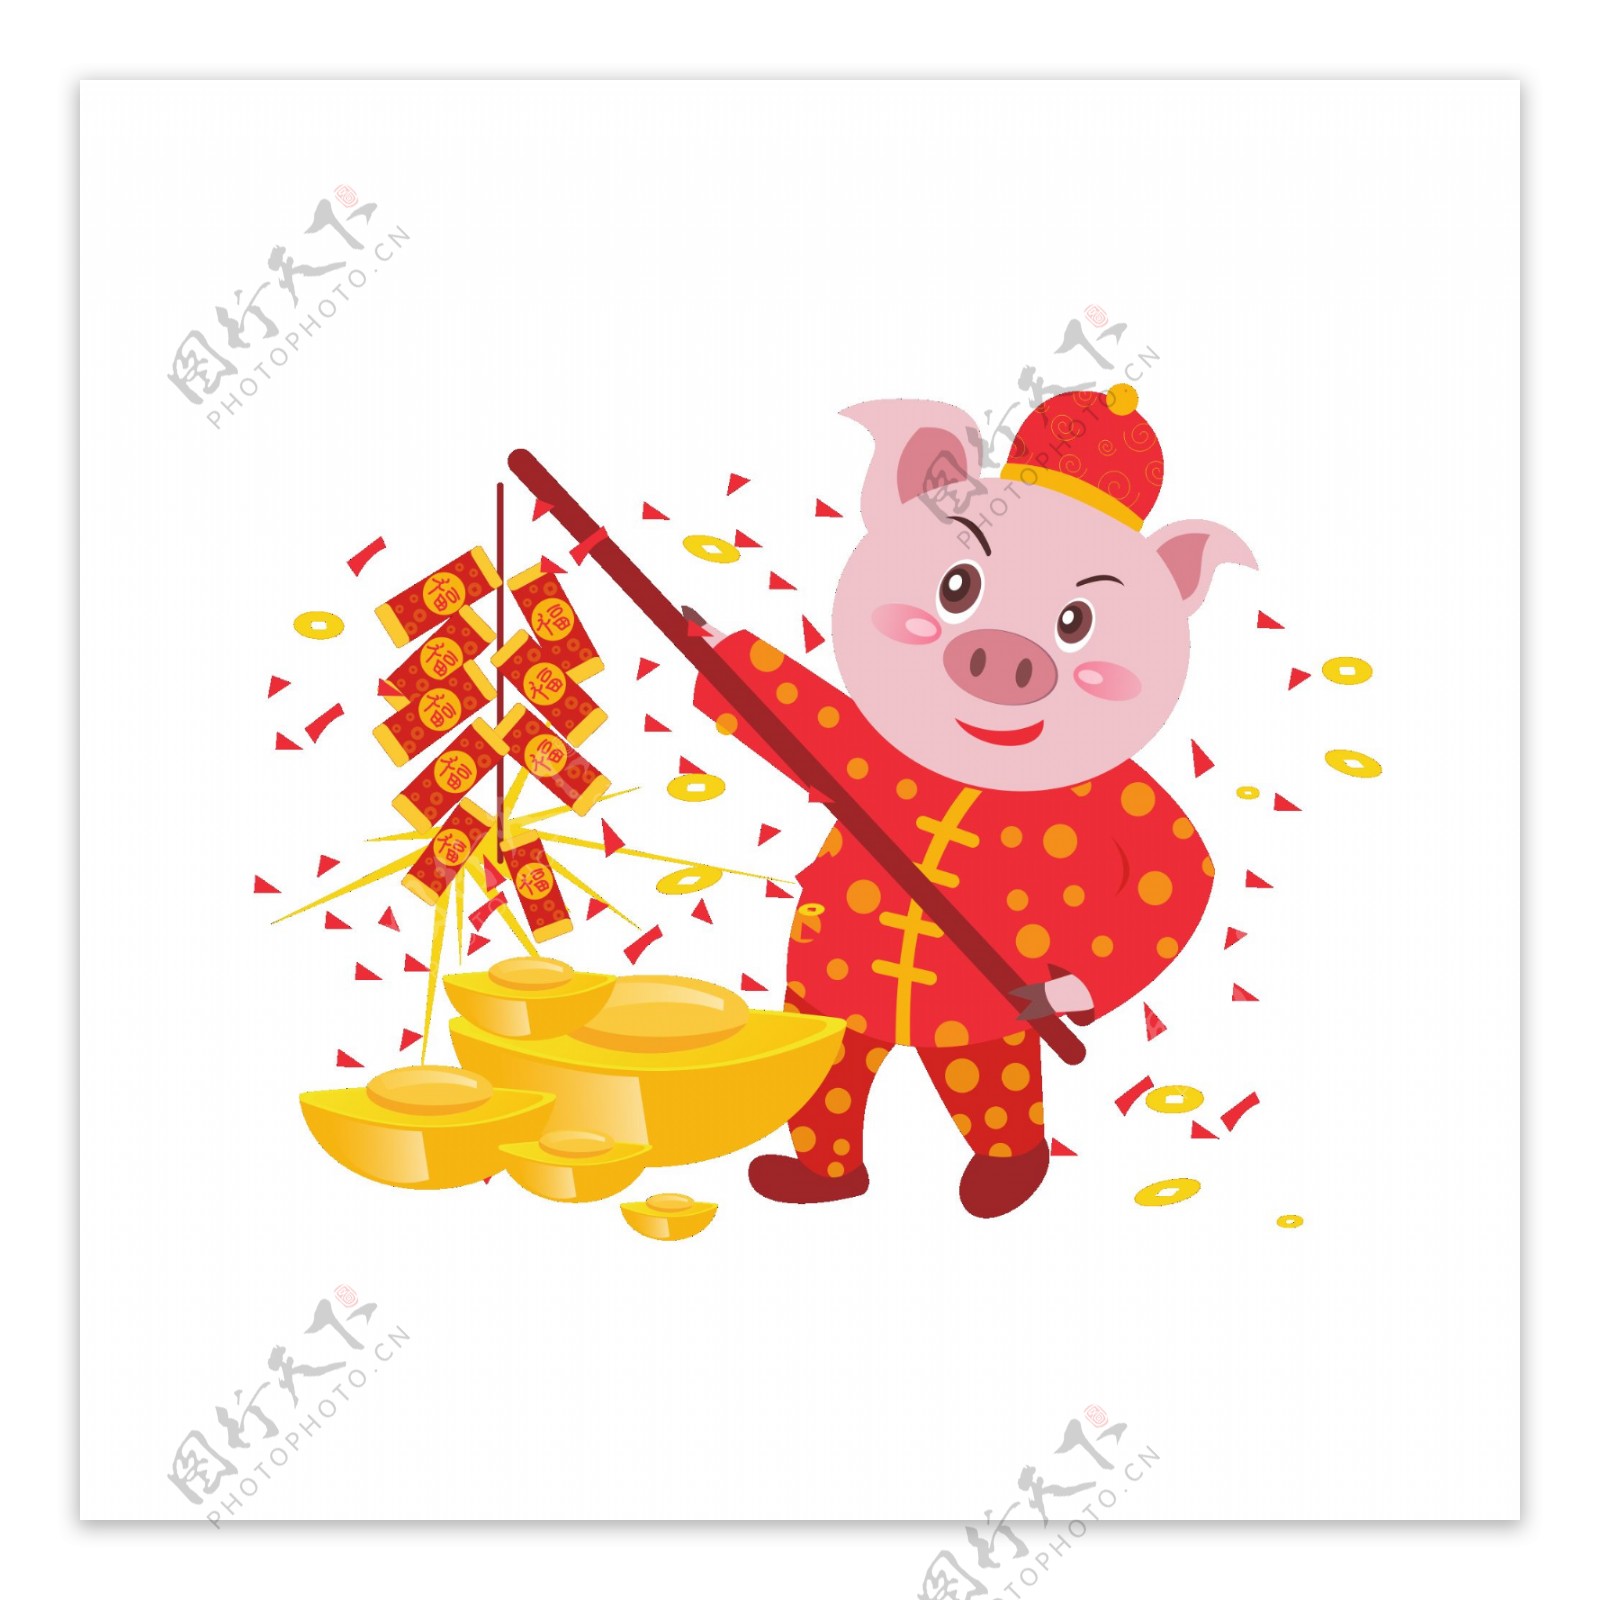 猪年元素之卡通可爱喜庆猪形象